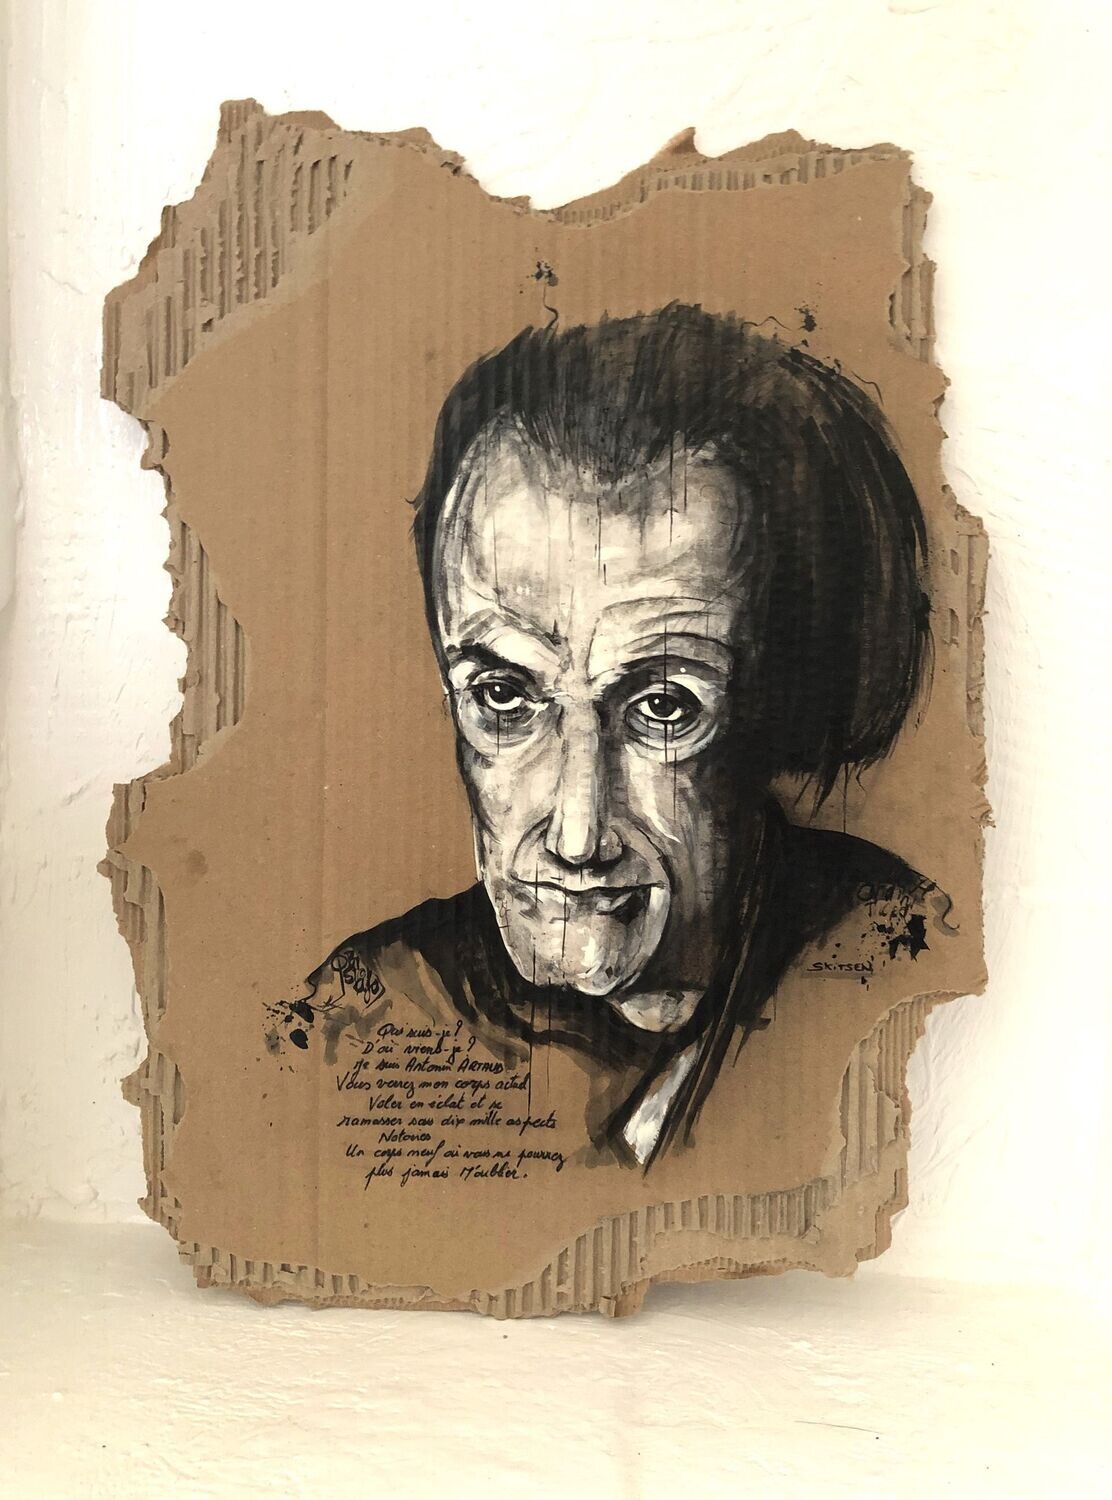 "Antonin Artaud".
Réalisation sur carton épais. 52x38cm avec citation de Artaud.
Acrylique, encre chine.
Artiste "Skitsen".